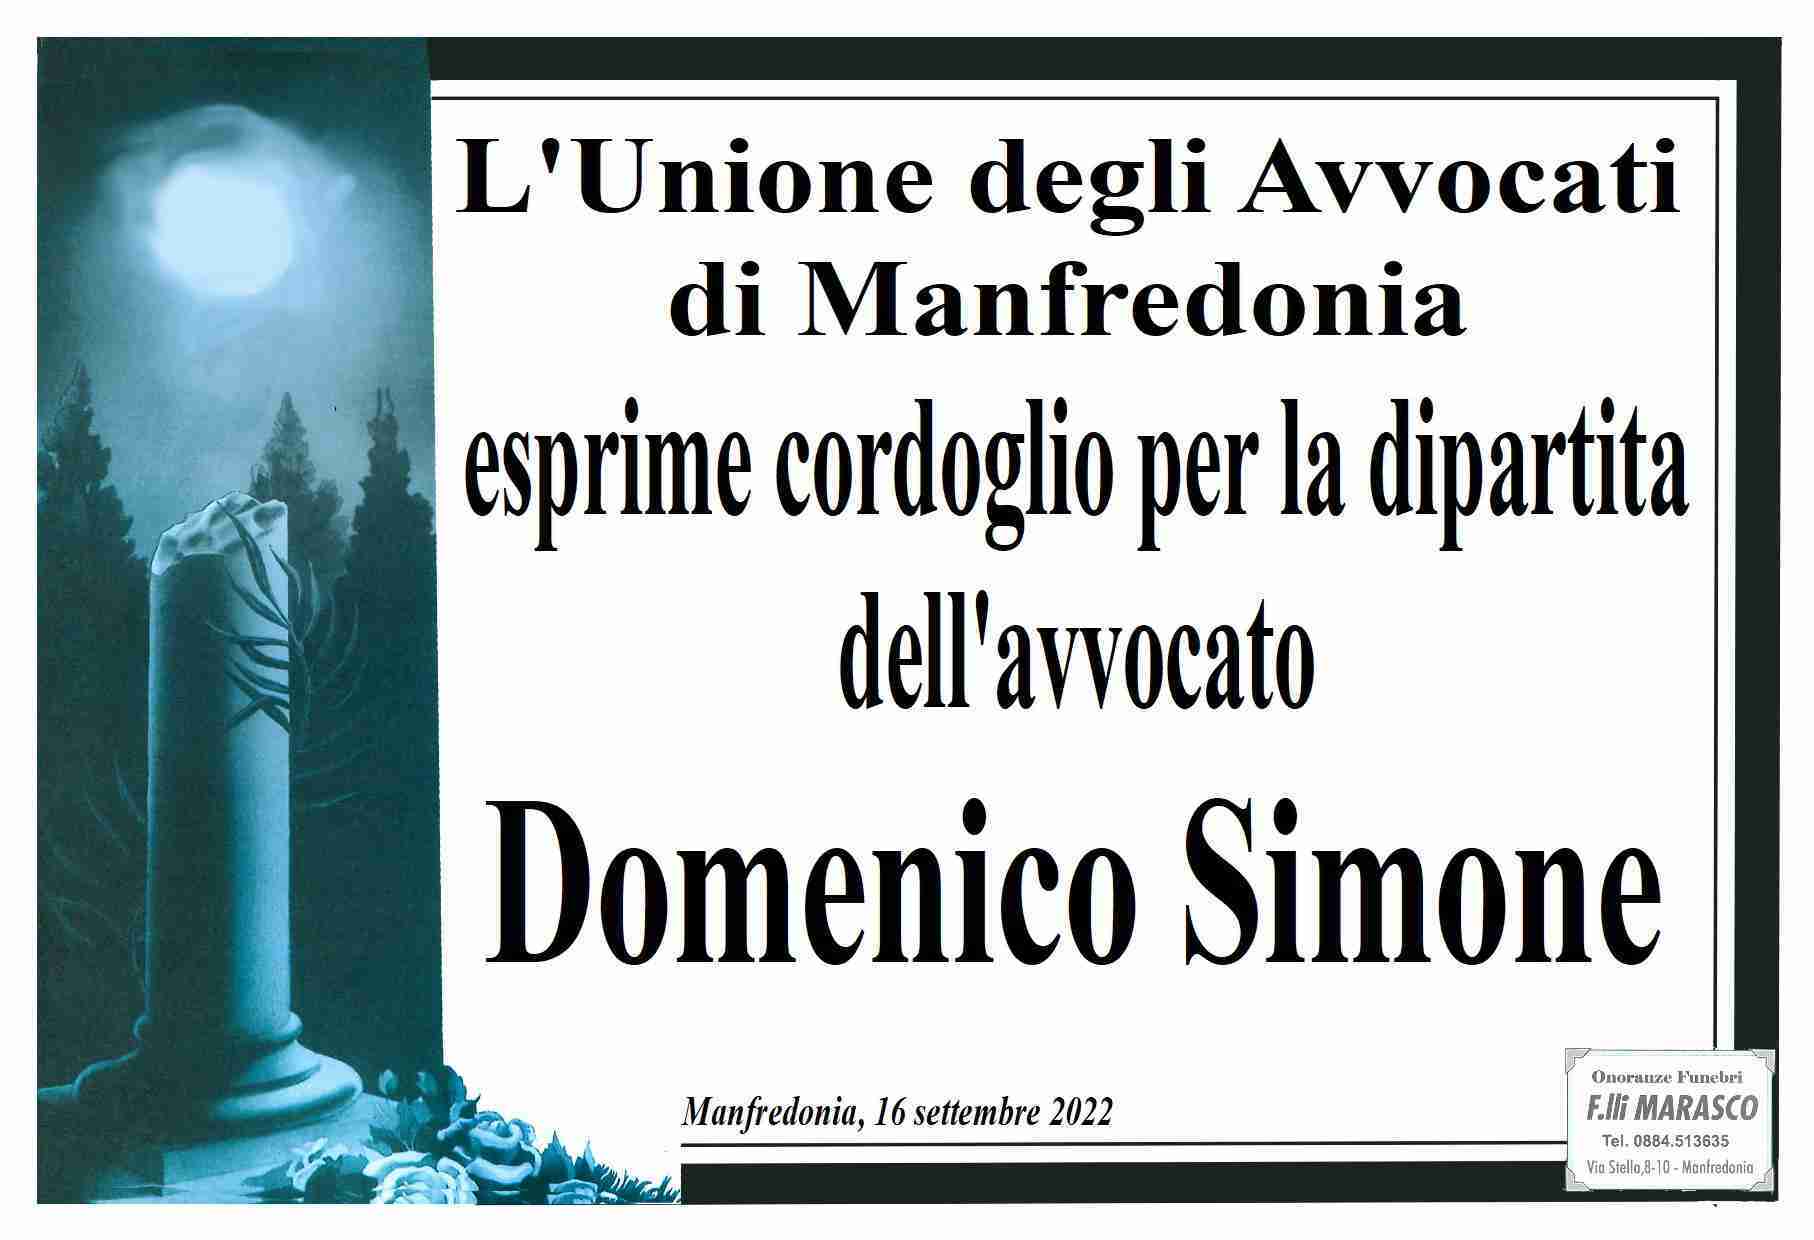 Domenico Salvatore Simone